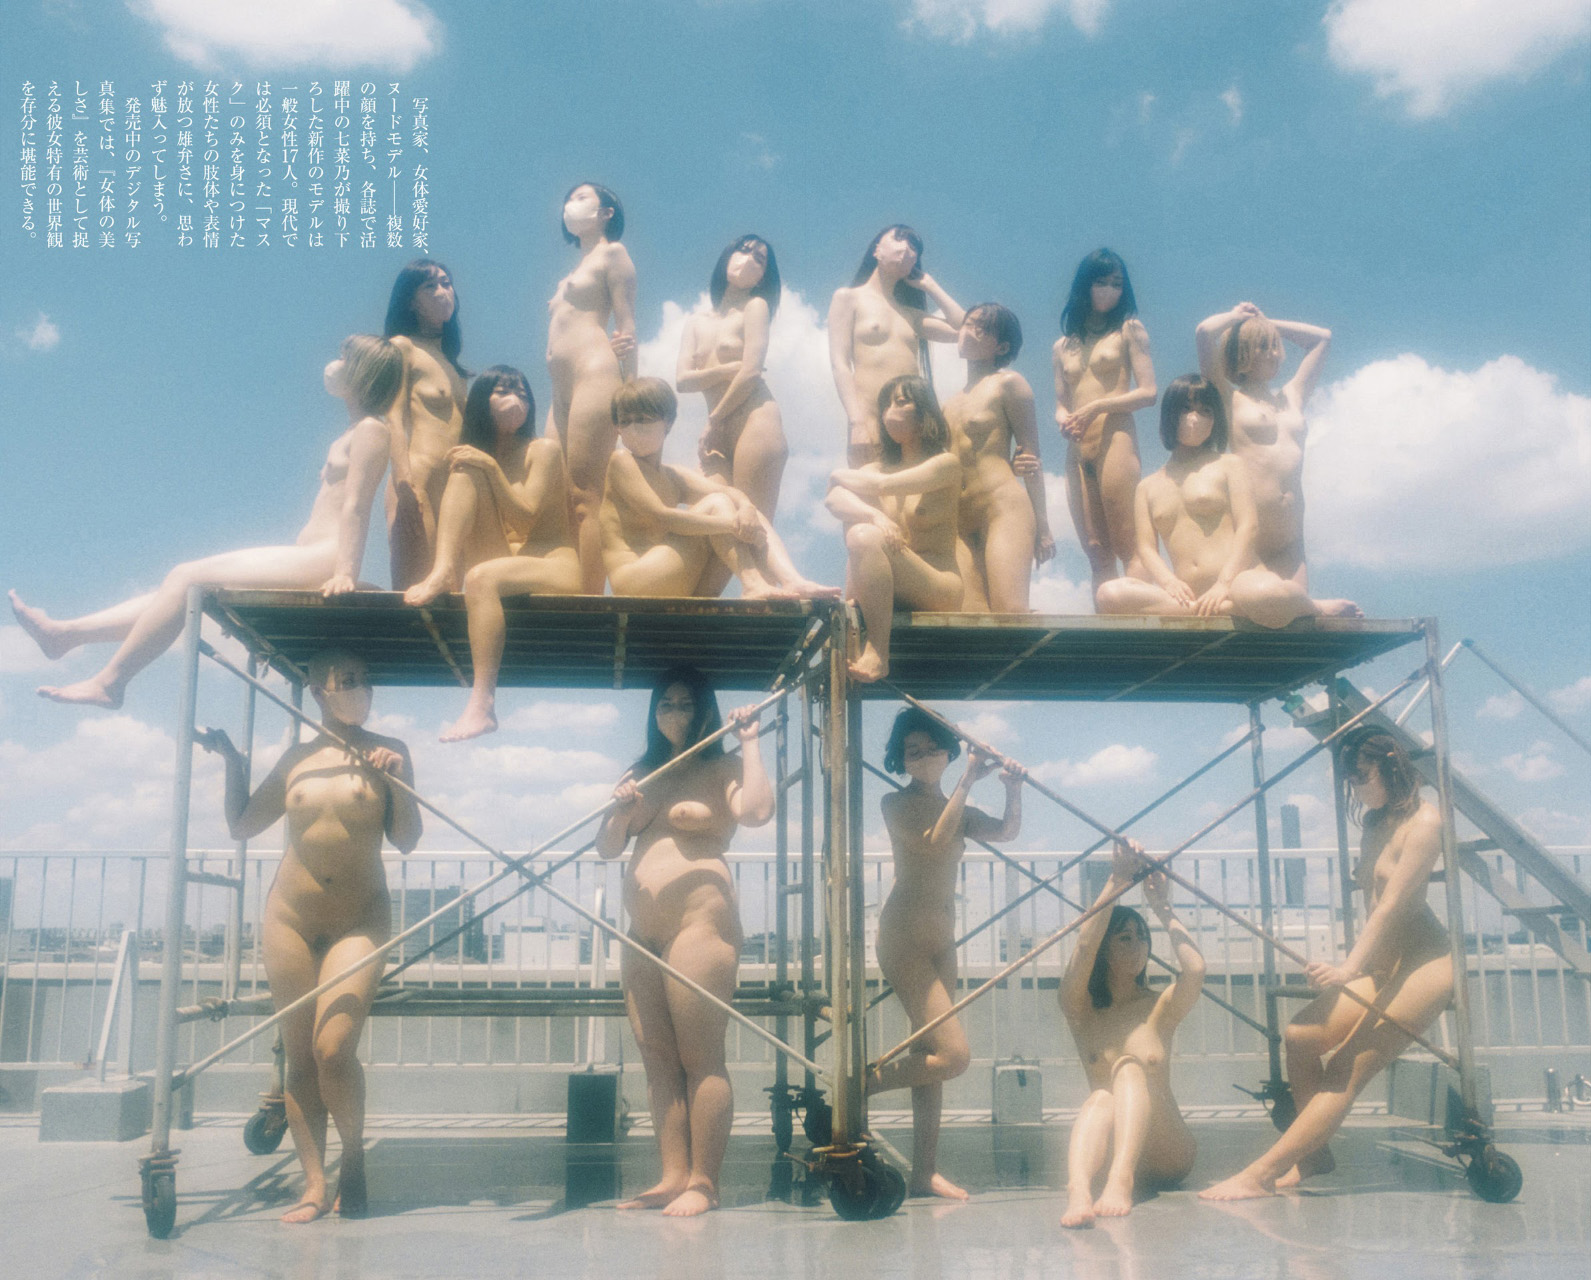 美女１７人が全裸にマスク姿で大集合, Shukan Post 2021.09.17 (週刊ポスト 2021年9月17日號) - 貼圖 - 清涼寫真 -